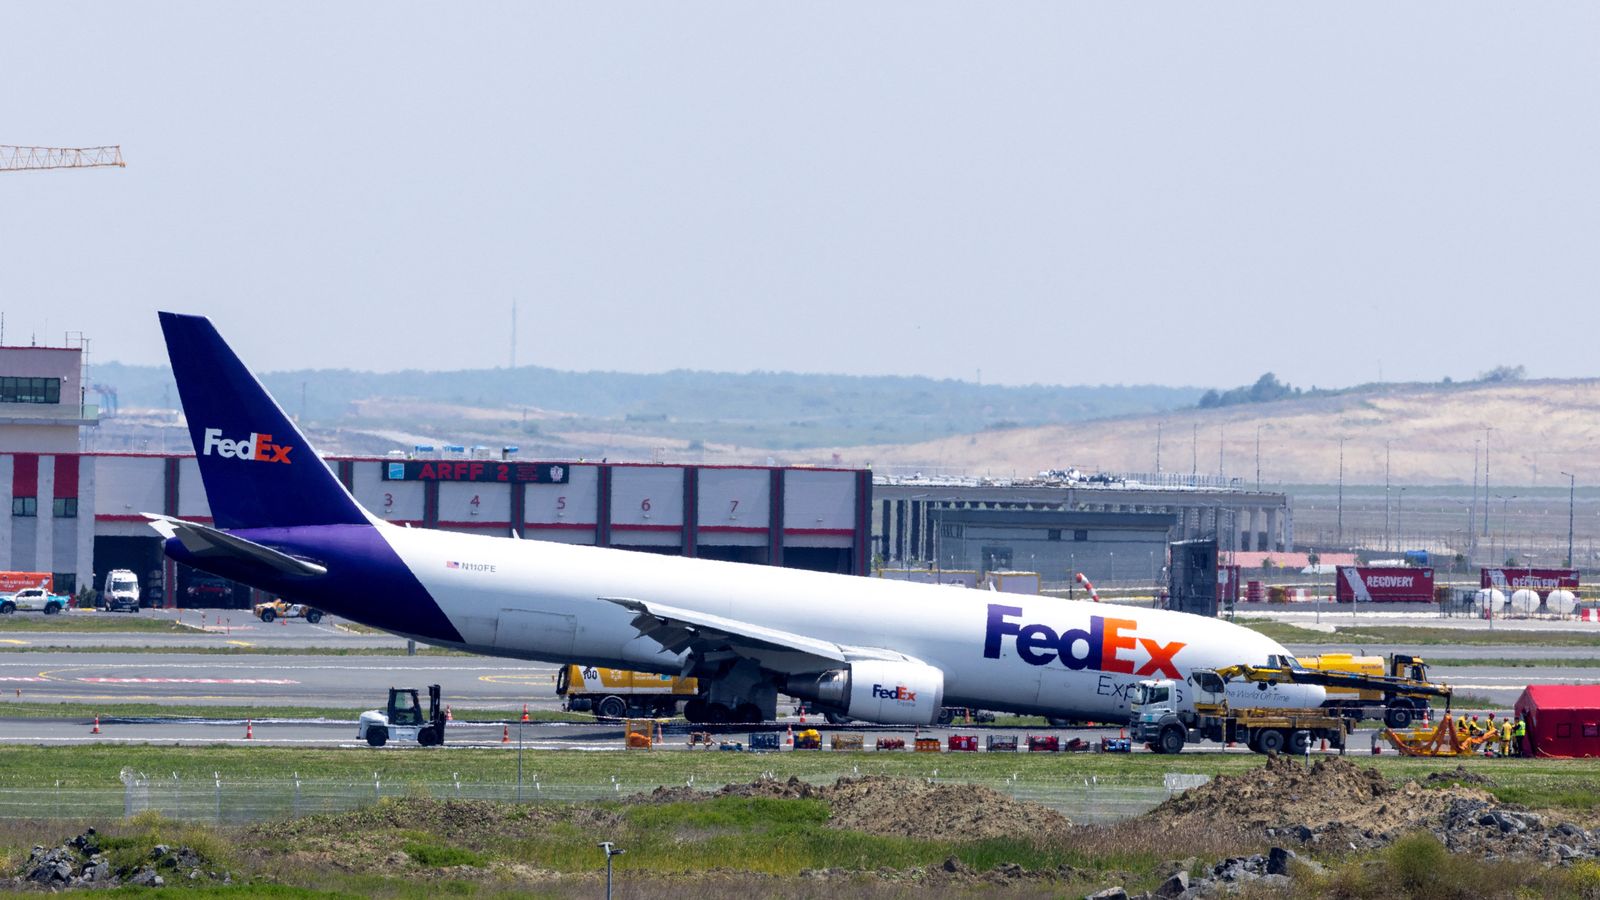 Видеото показва искри, излизащи от пистата, докато самолетът се влачи